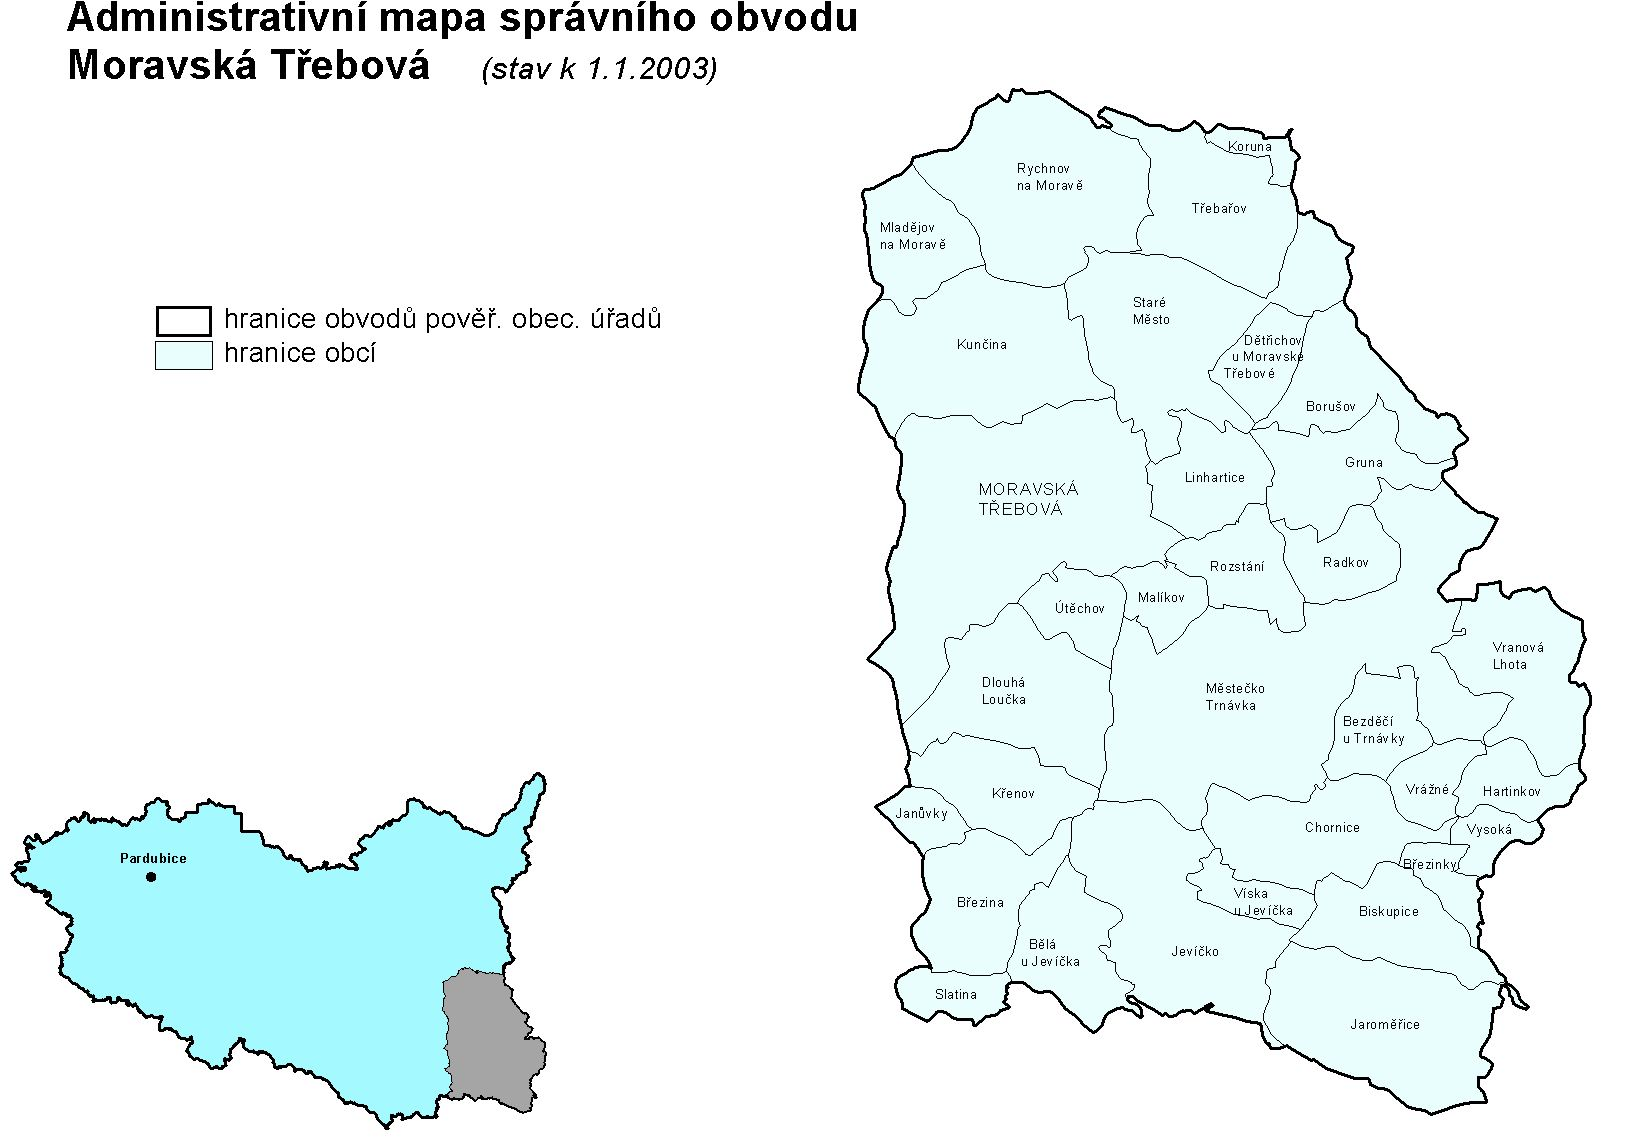 Správní obvod Moravská Třebová tvoří jihovýchodní výběžek Pardubického kraje. Svojí východní částí hraničí s obcemi Olomouckého kraje, na jihu je obklopen obcemi kraje Jihomoravského.